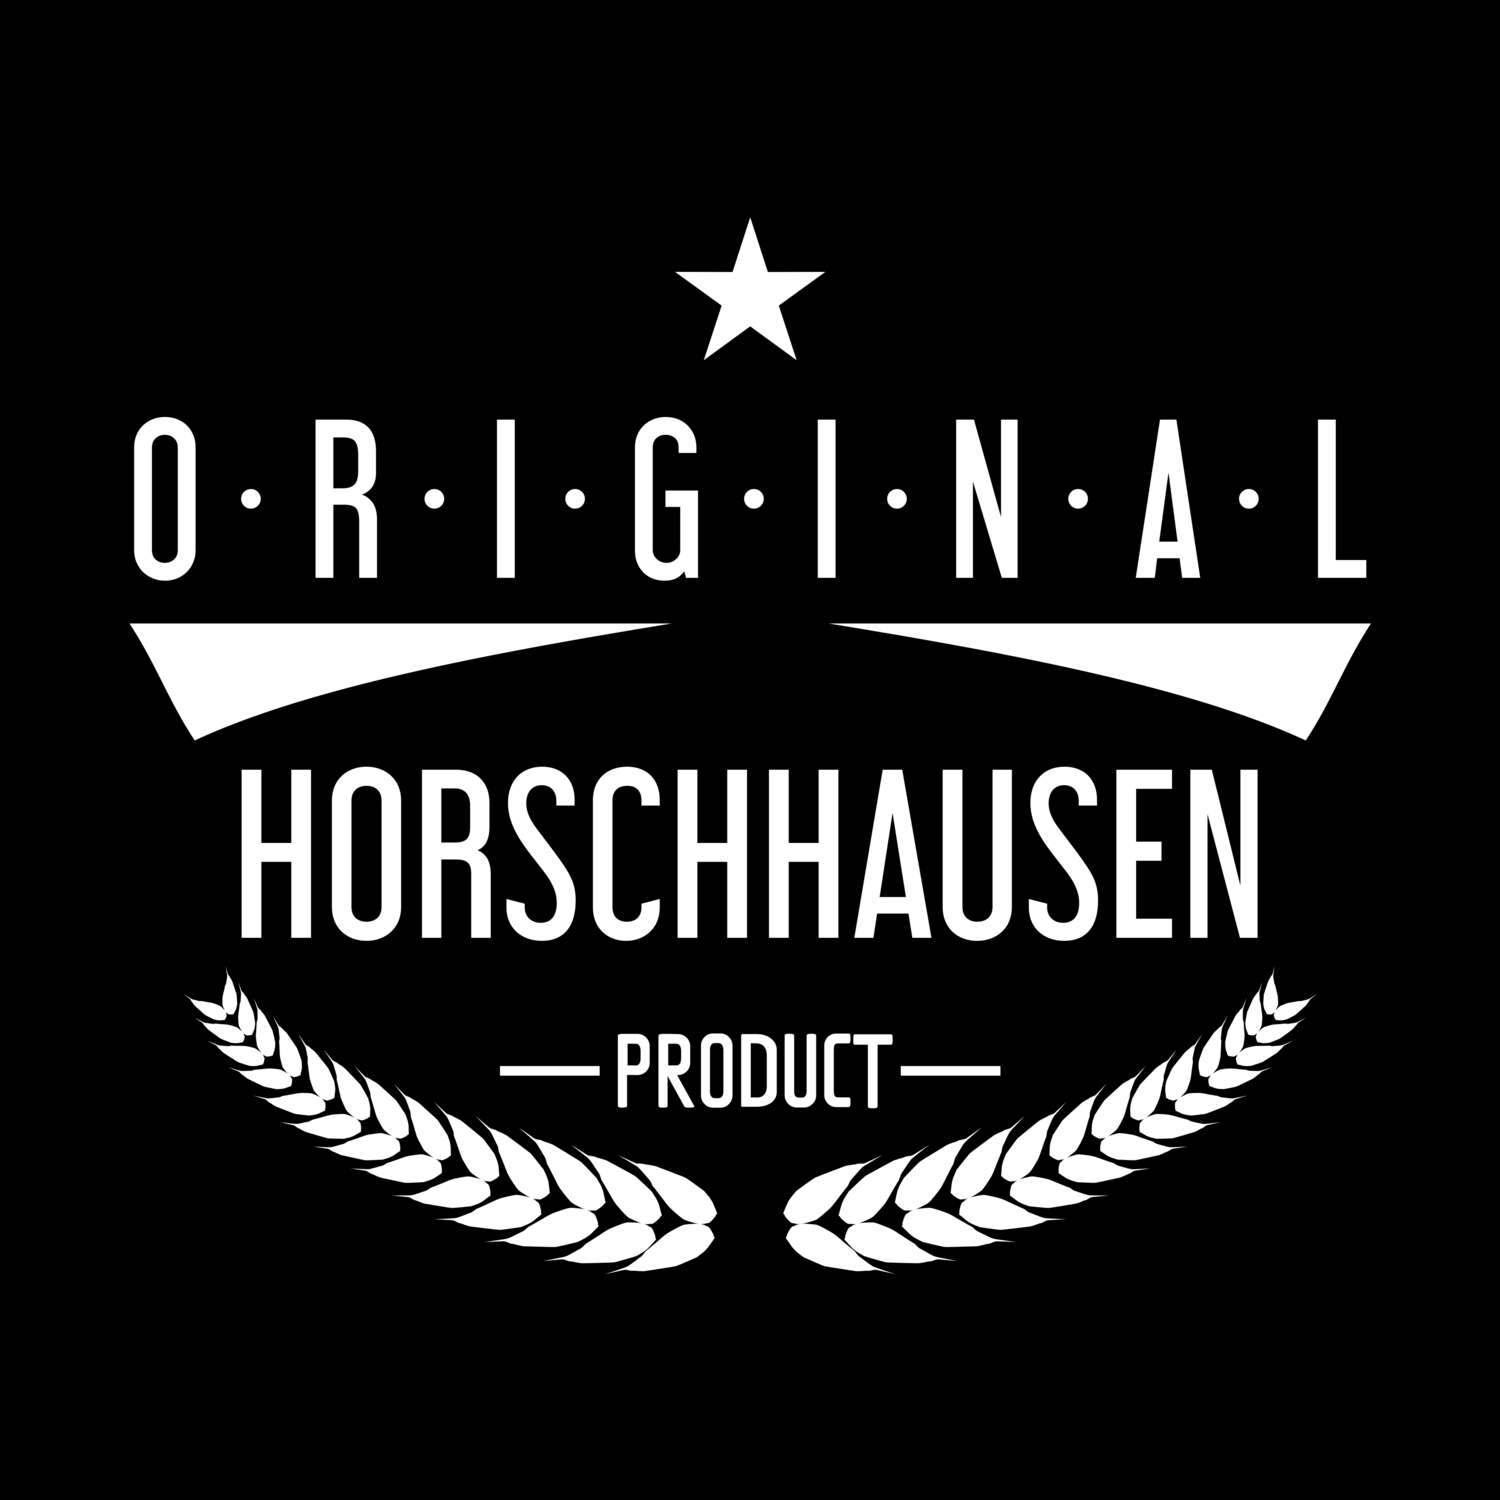 Horschhausen T-Shirt »Original Product«